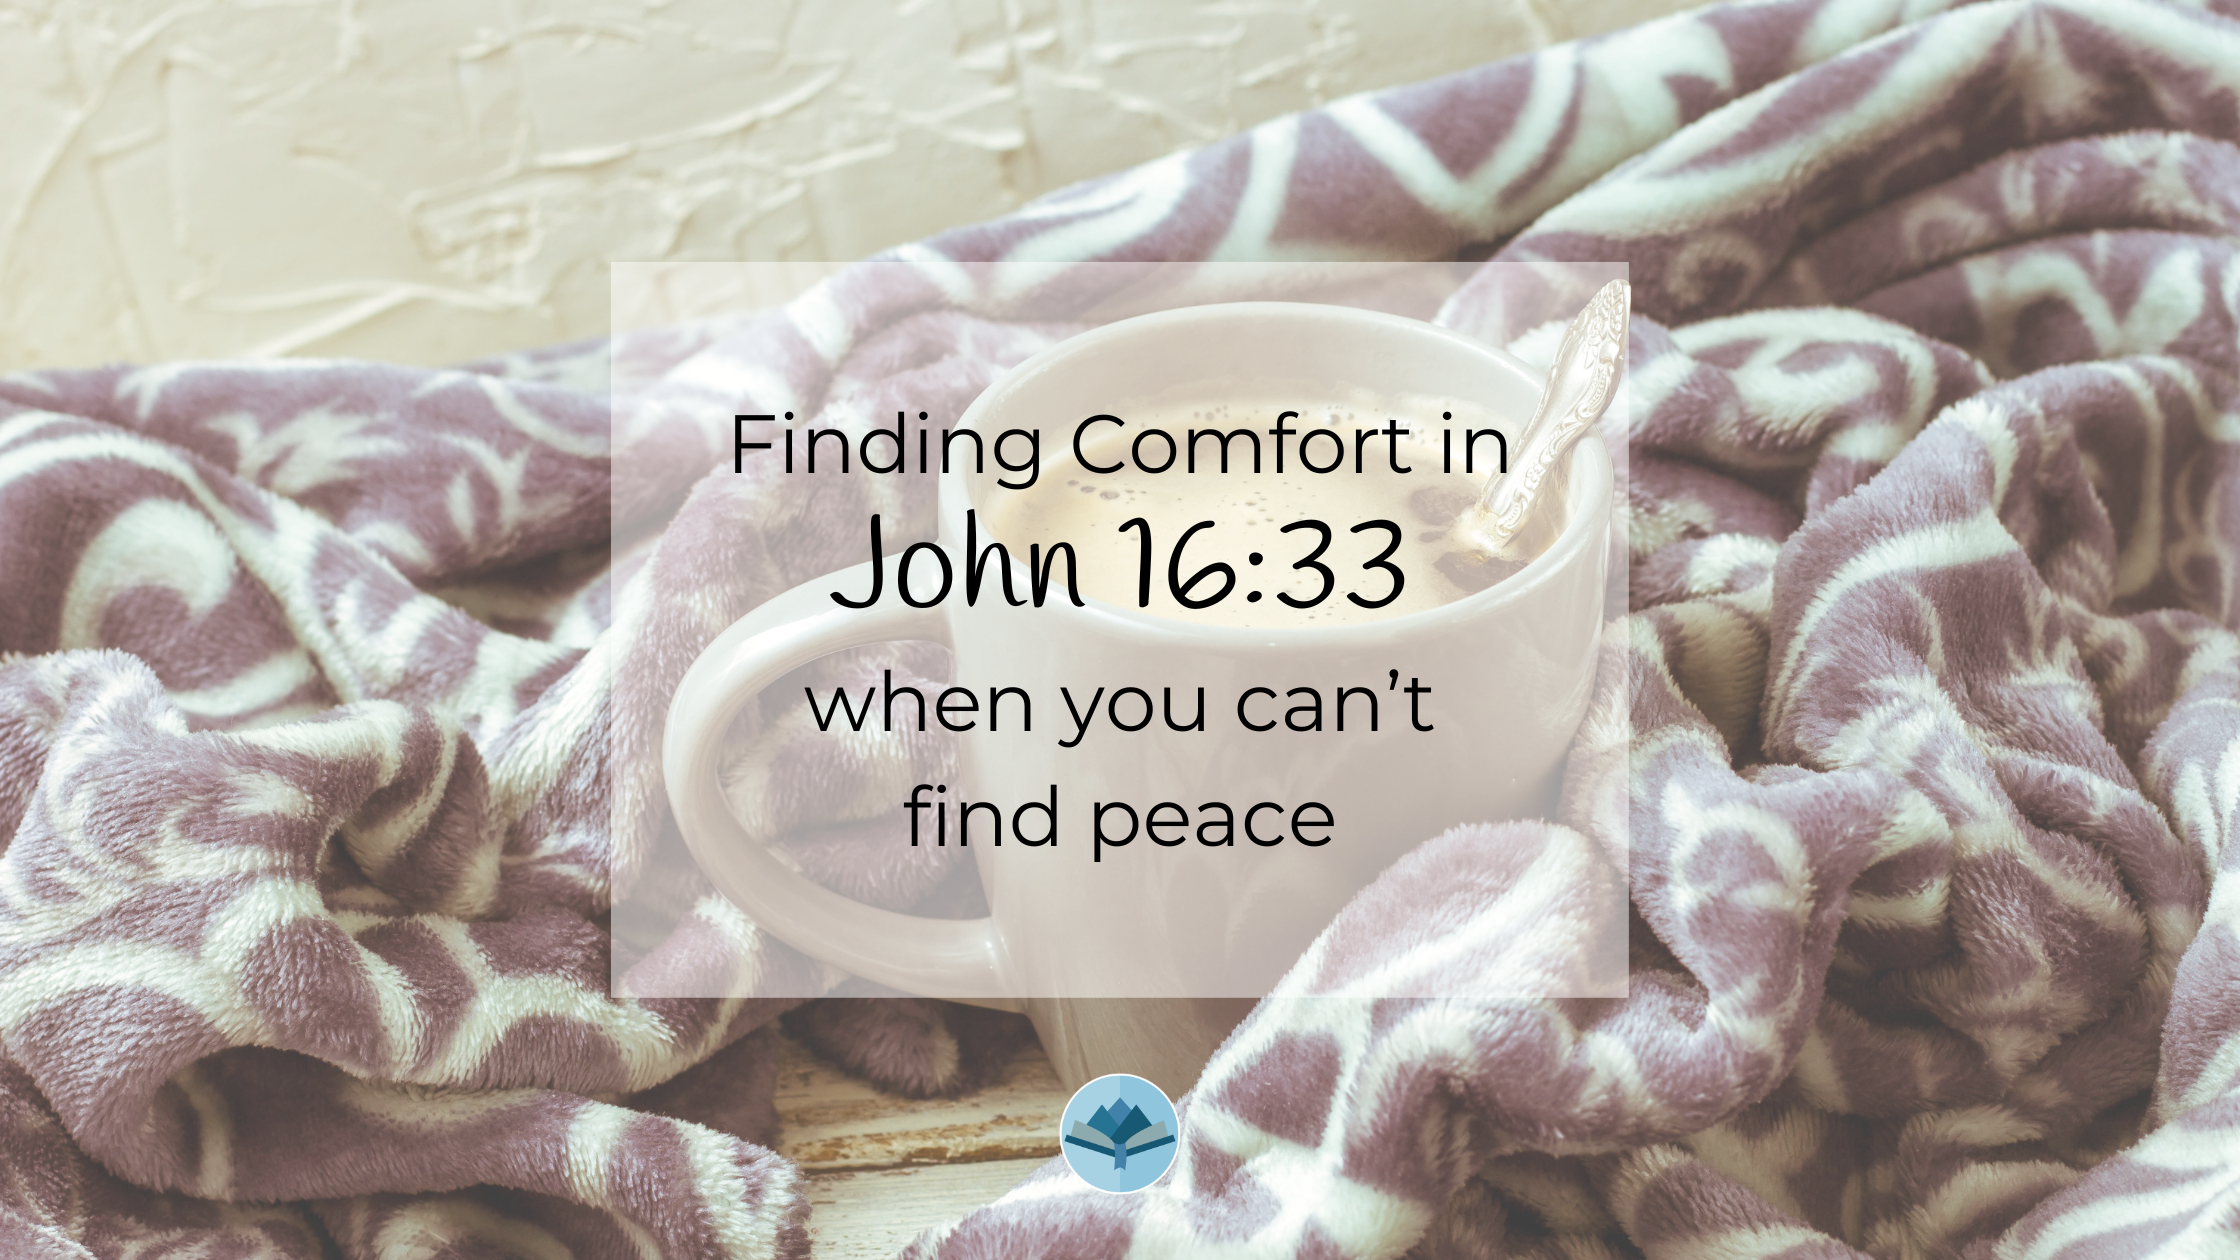 Finding Comfort in John 16:33